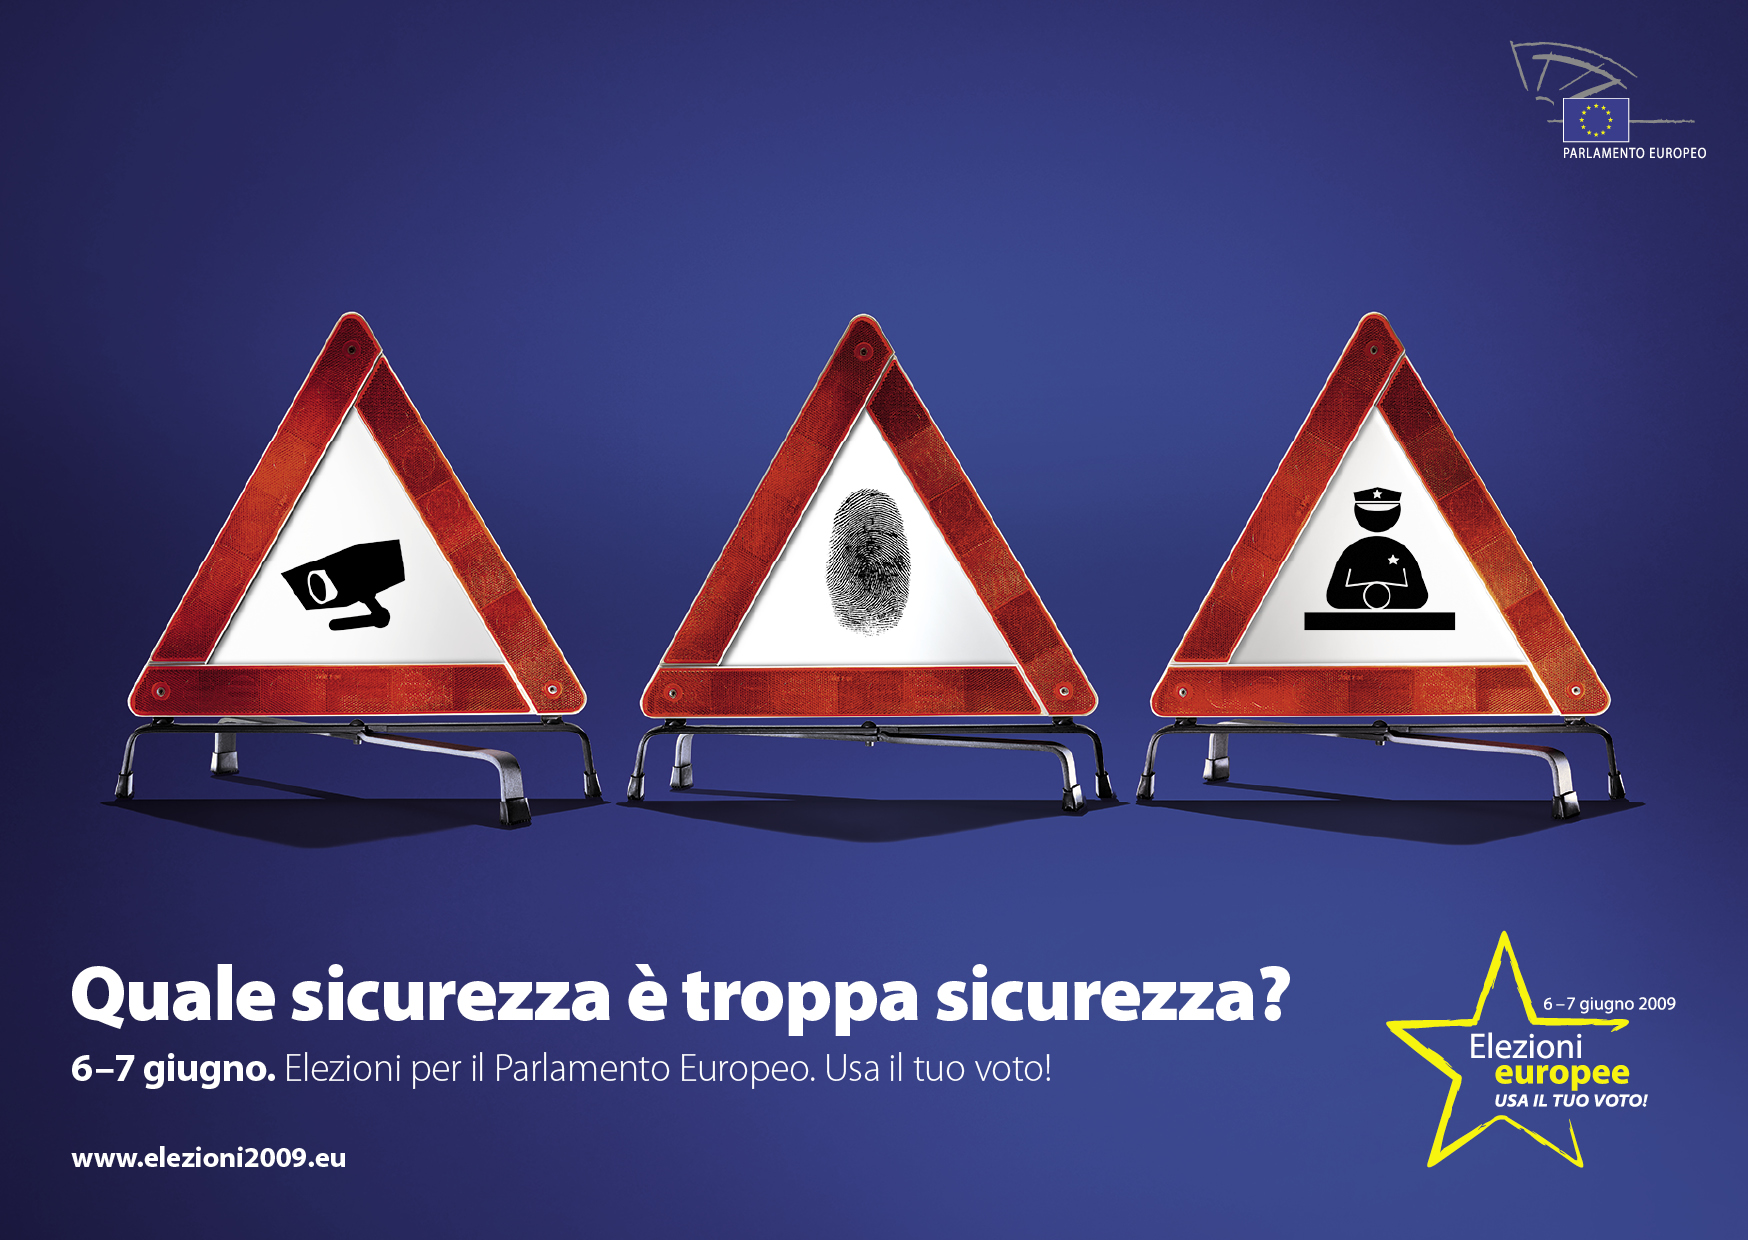 ¿El cartel de la discordia? Esa huella dactilar quizá no guste a Berlusconi